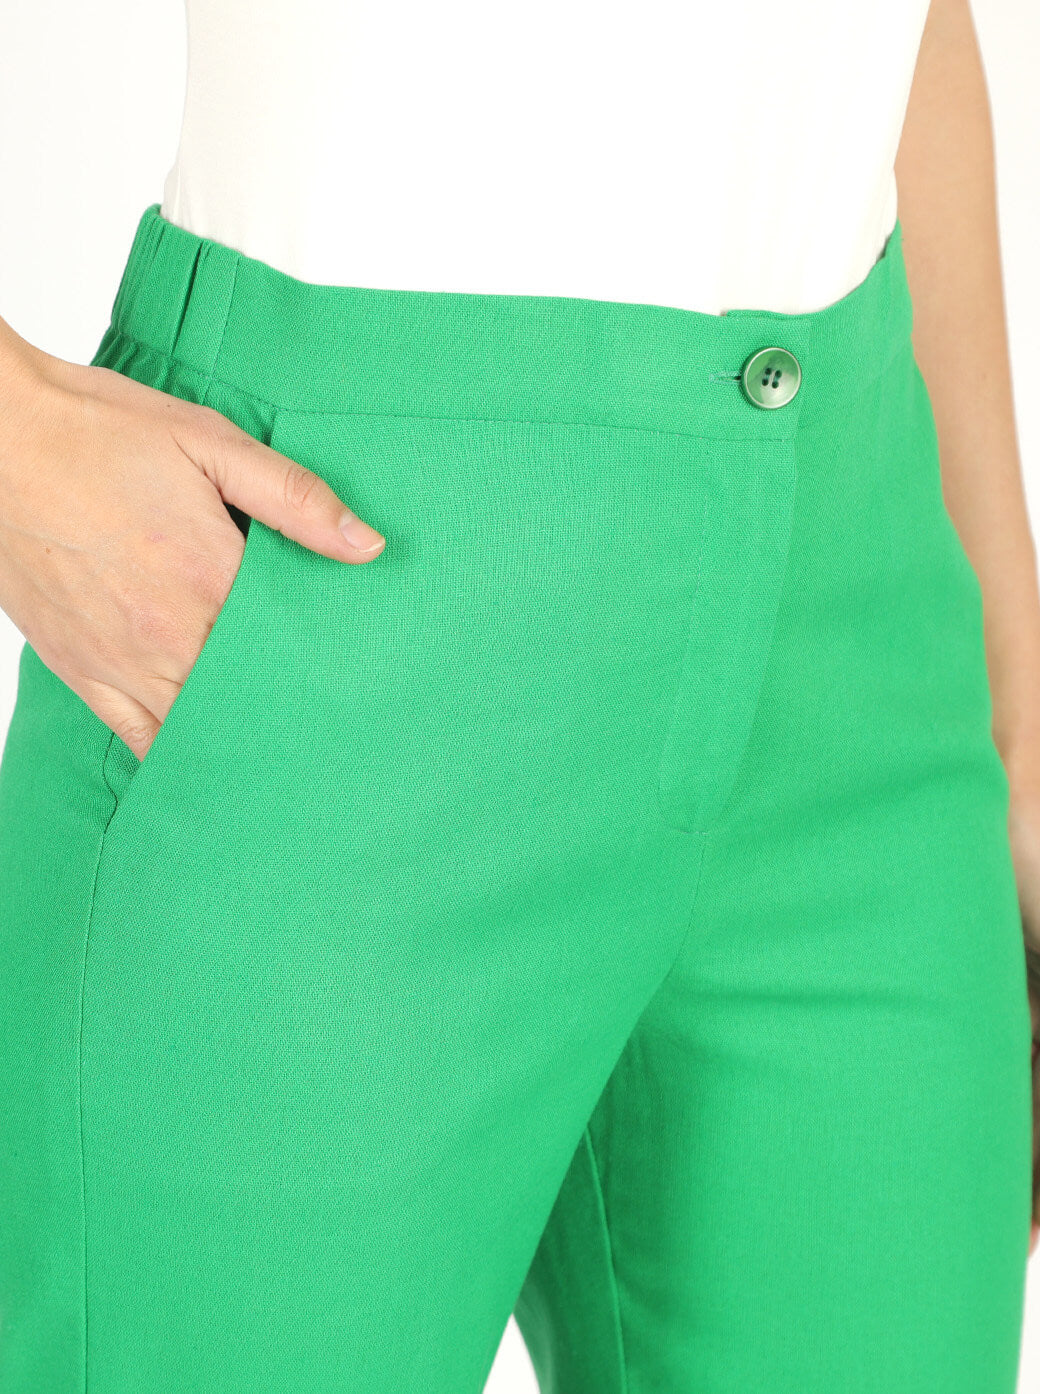 Pantalón verde Eira